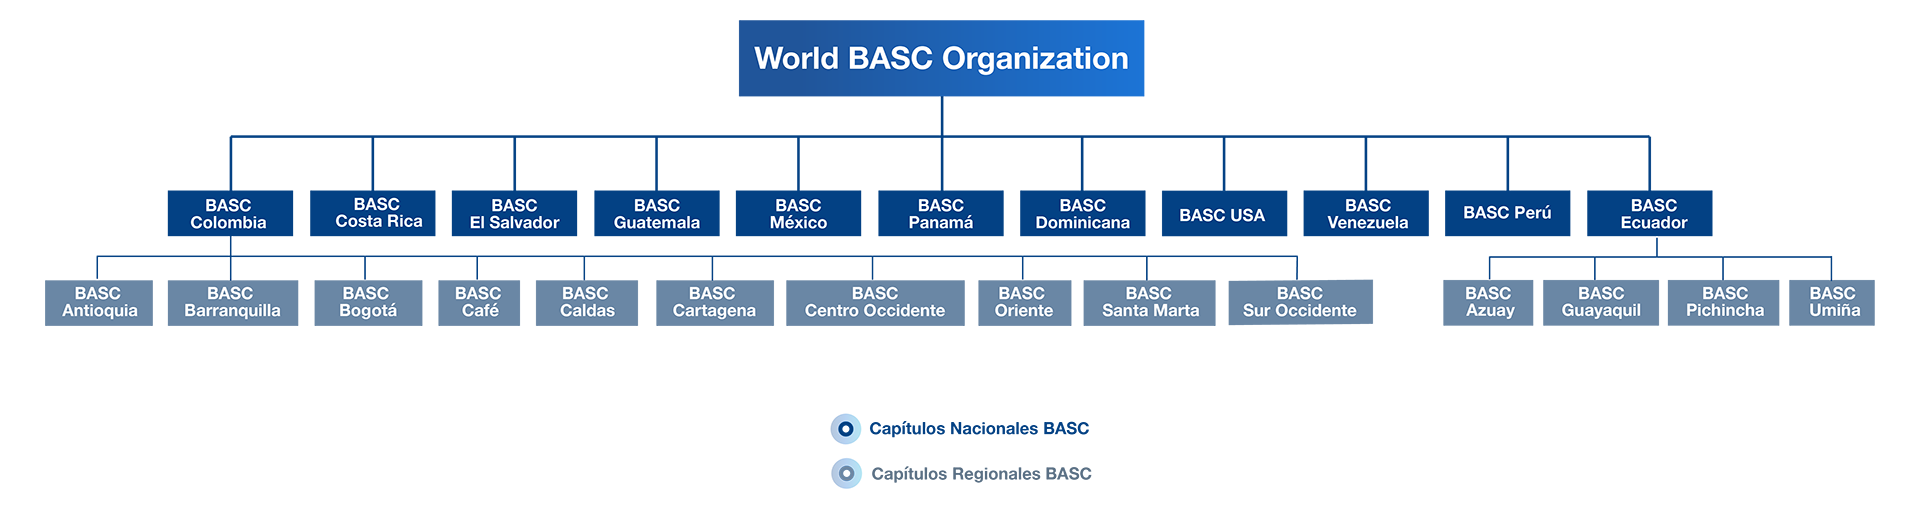 Organización BASC